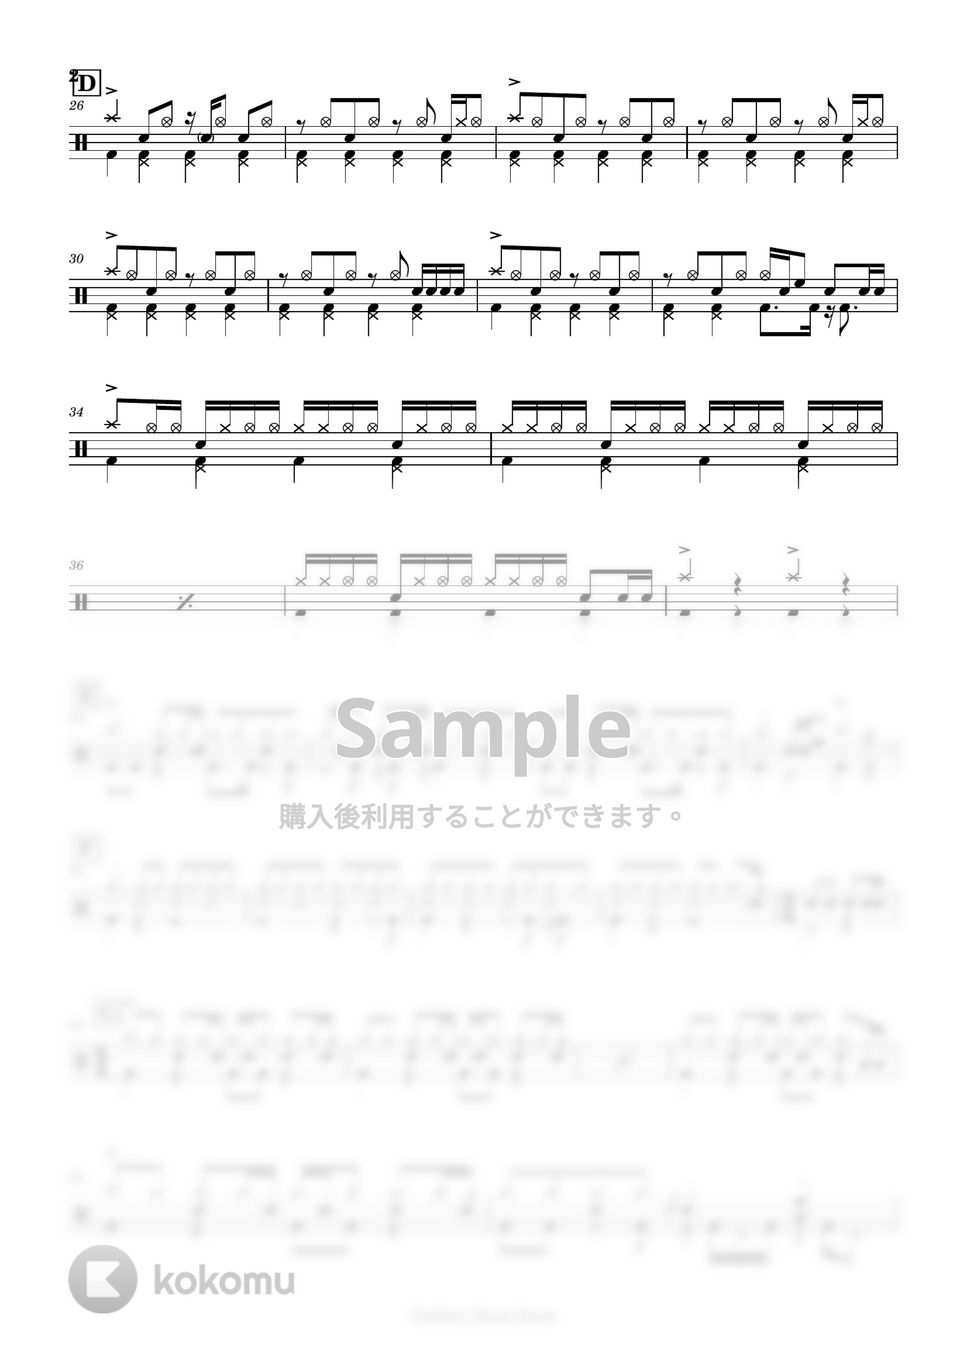 マカロニえんぴつ - ブルーベリー・ナイツ by Cookie's Drum Score